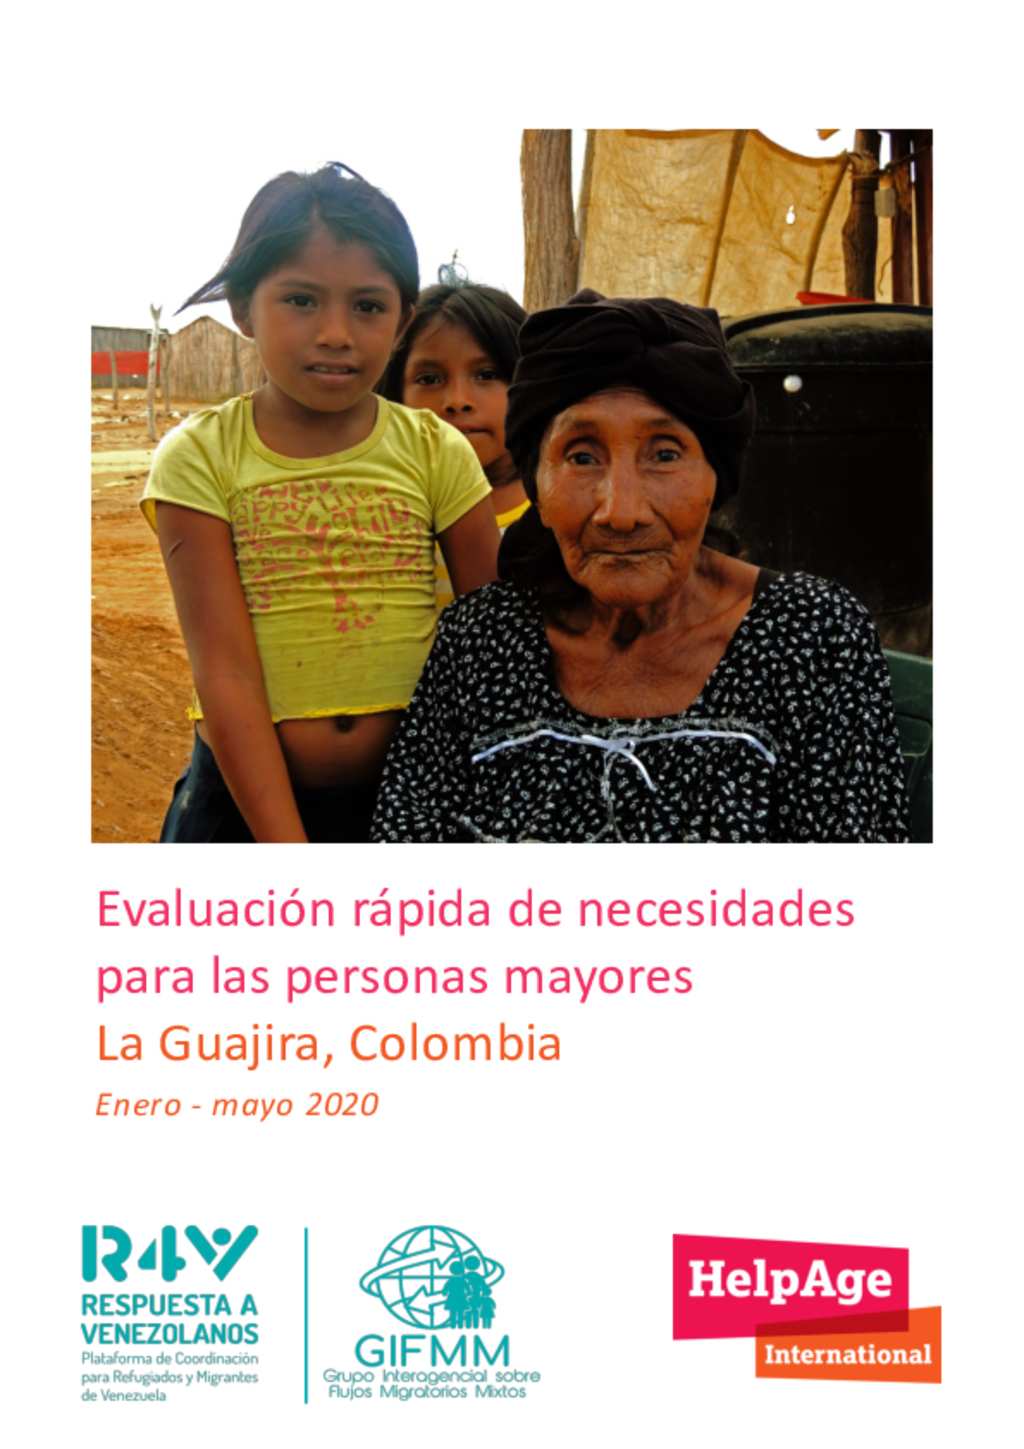 Document - Colombia: Evaluación rápida necesidades para las mayores HelpAge